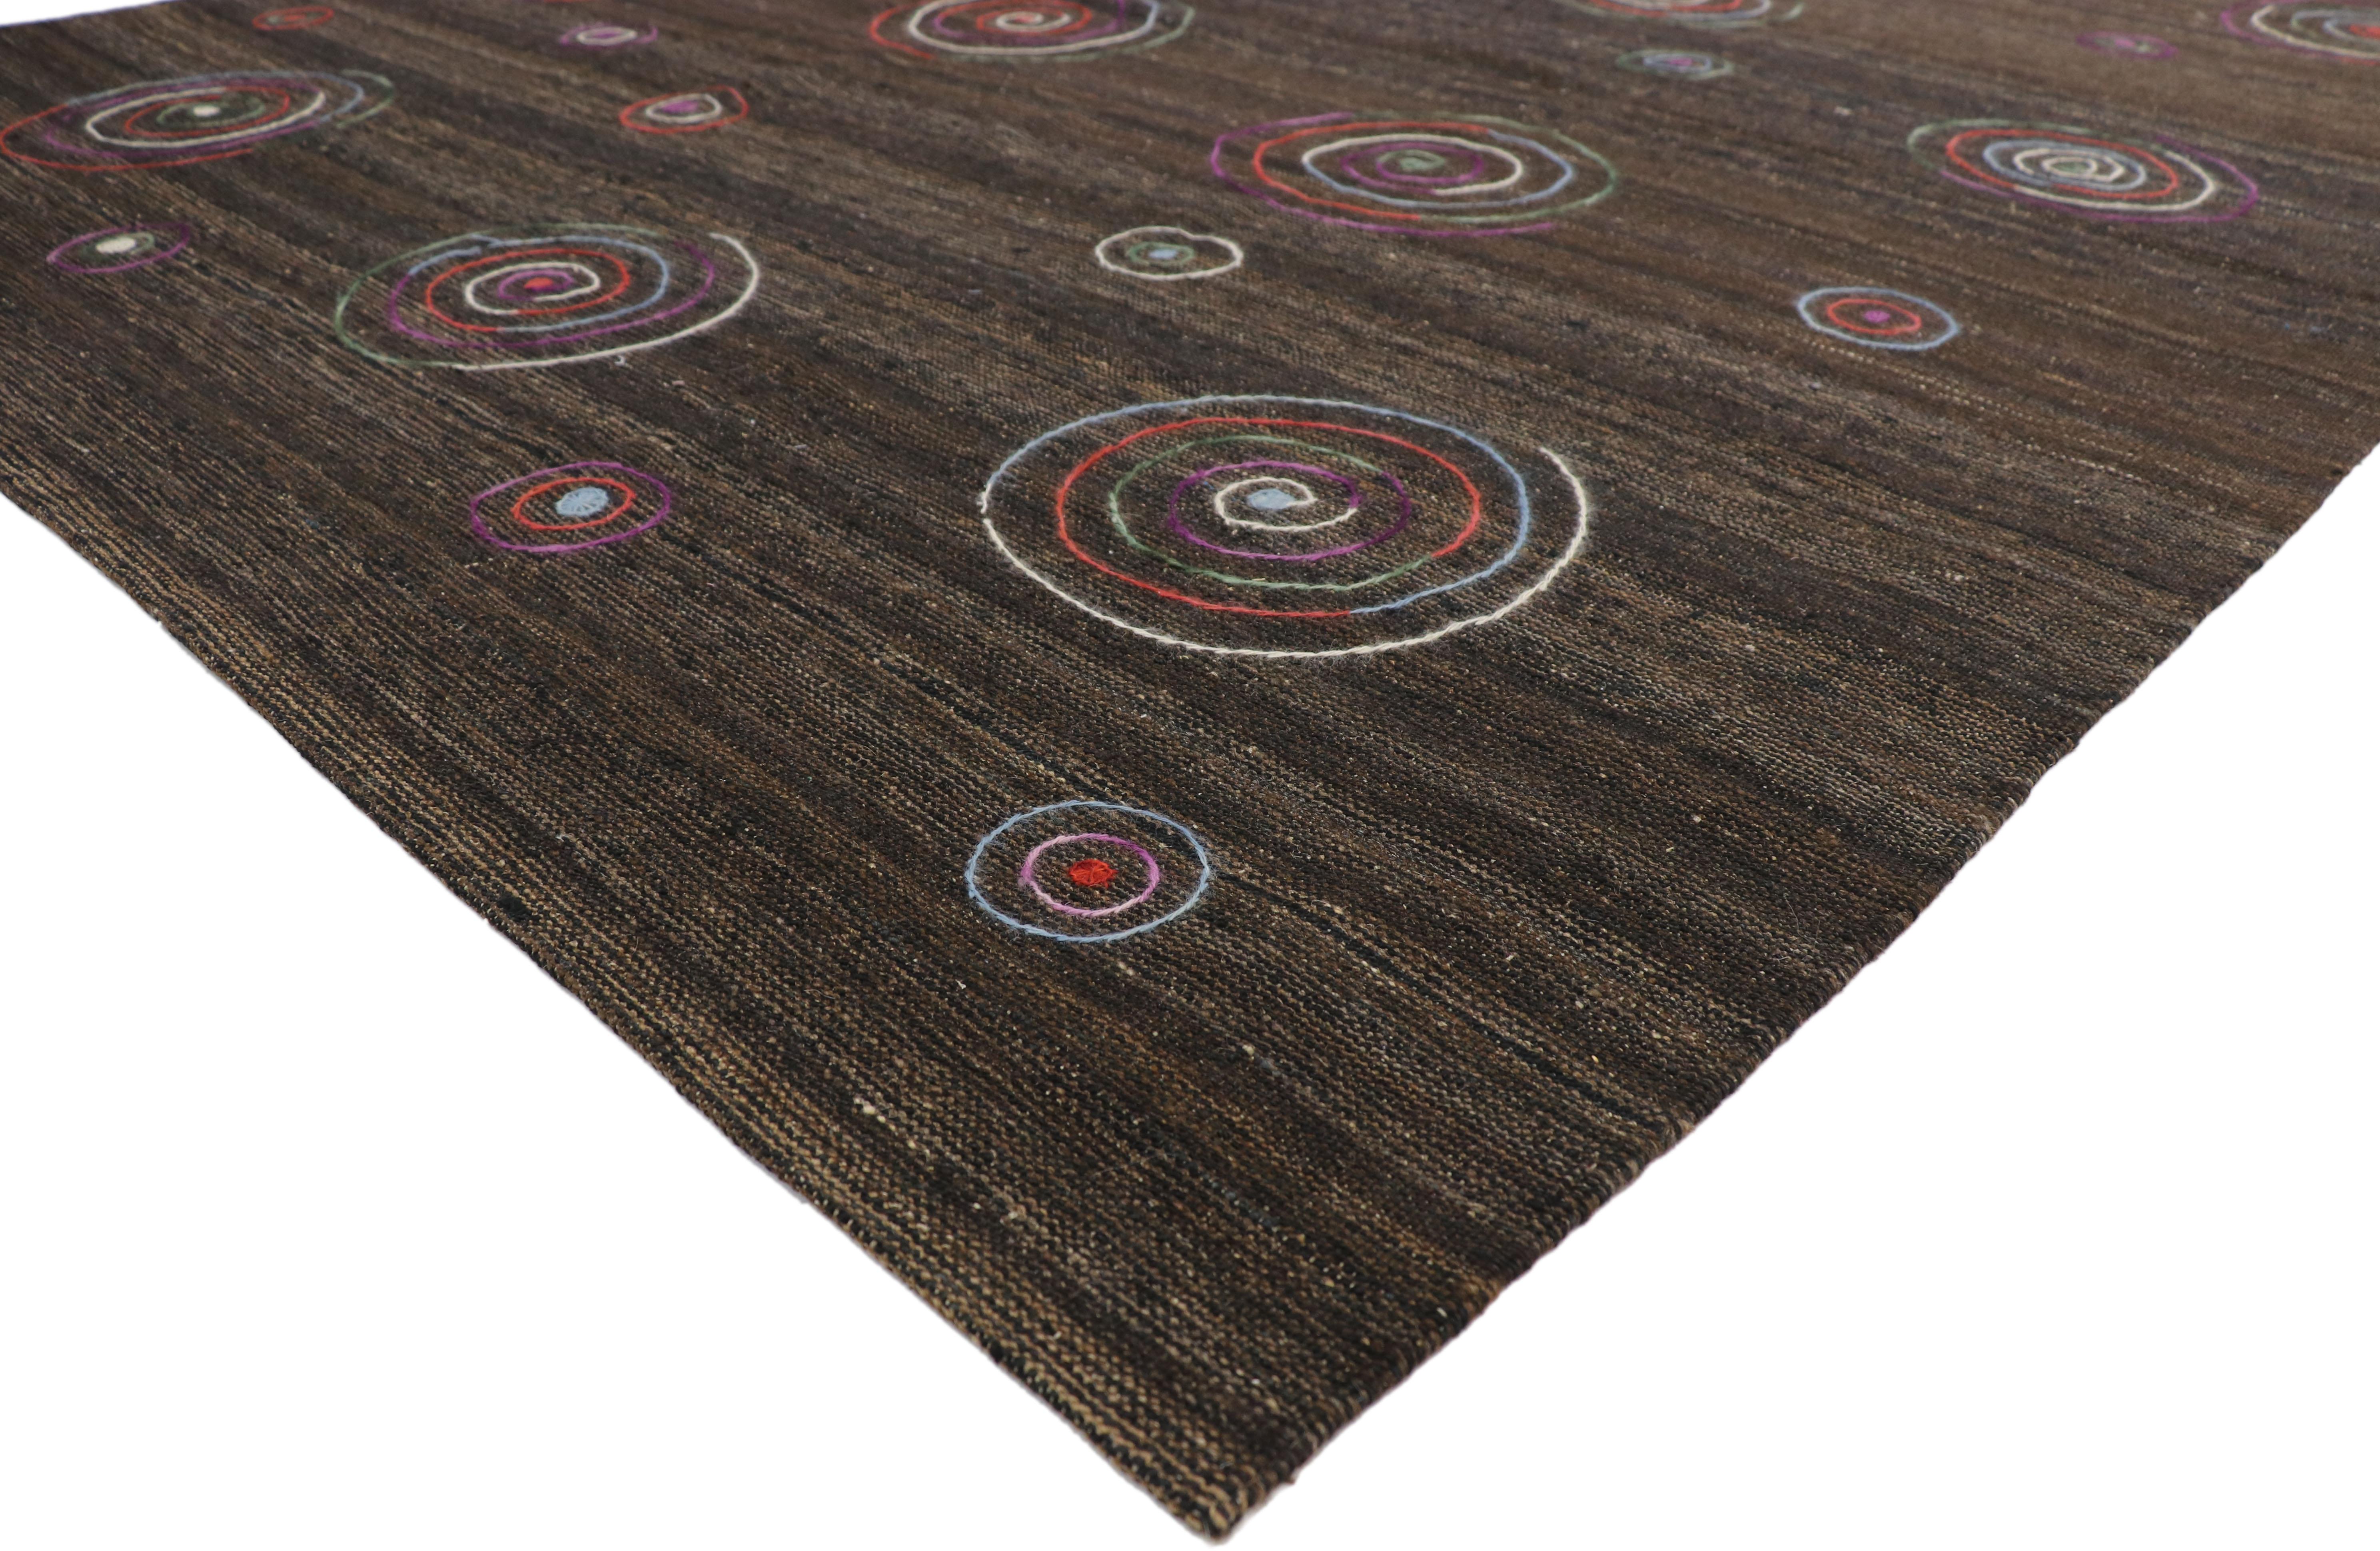 80098, Vintage-Suzani-Kilim-Teppich mit Stickerei im böhmischen Stil. Dieser handgewebte Suzani-Kelimteppich aus Wolle ist im böhmischen Stil bestickt. Der Suzani-Kelimteppich zeigt ein schönes geometrisches, mehrfarbiges Muster aus großen und